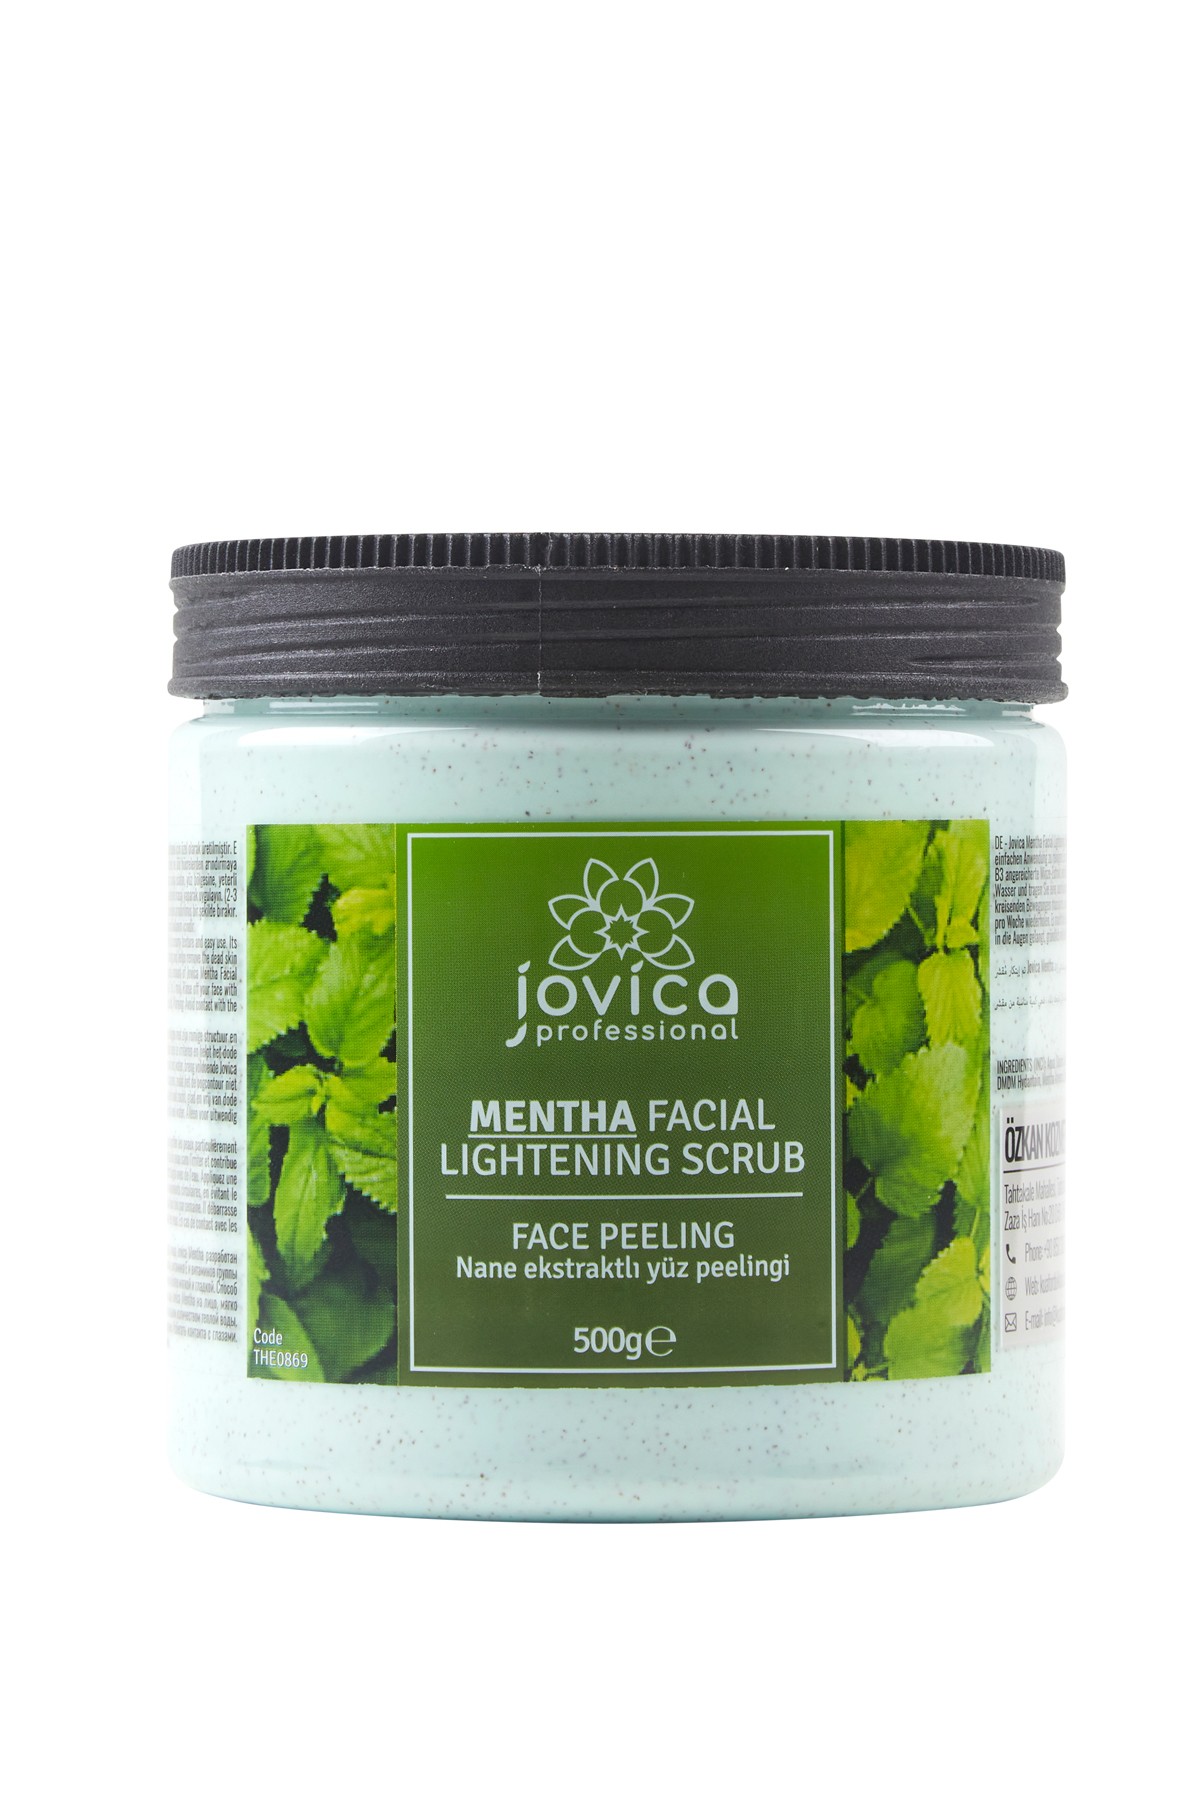 Jovica Mentha Facial Lightening Peeling Gel Scrub 500 ml Nane Esktraktlı